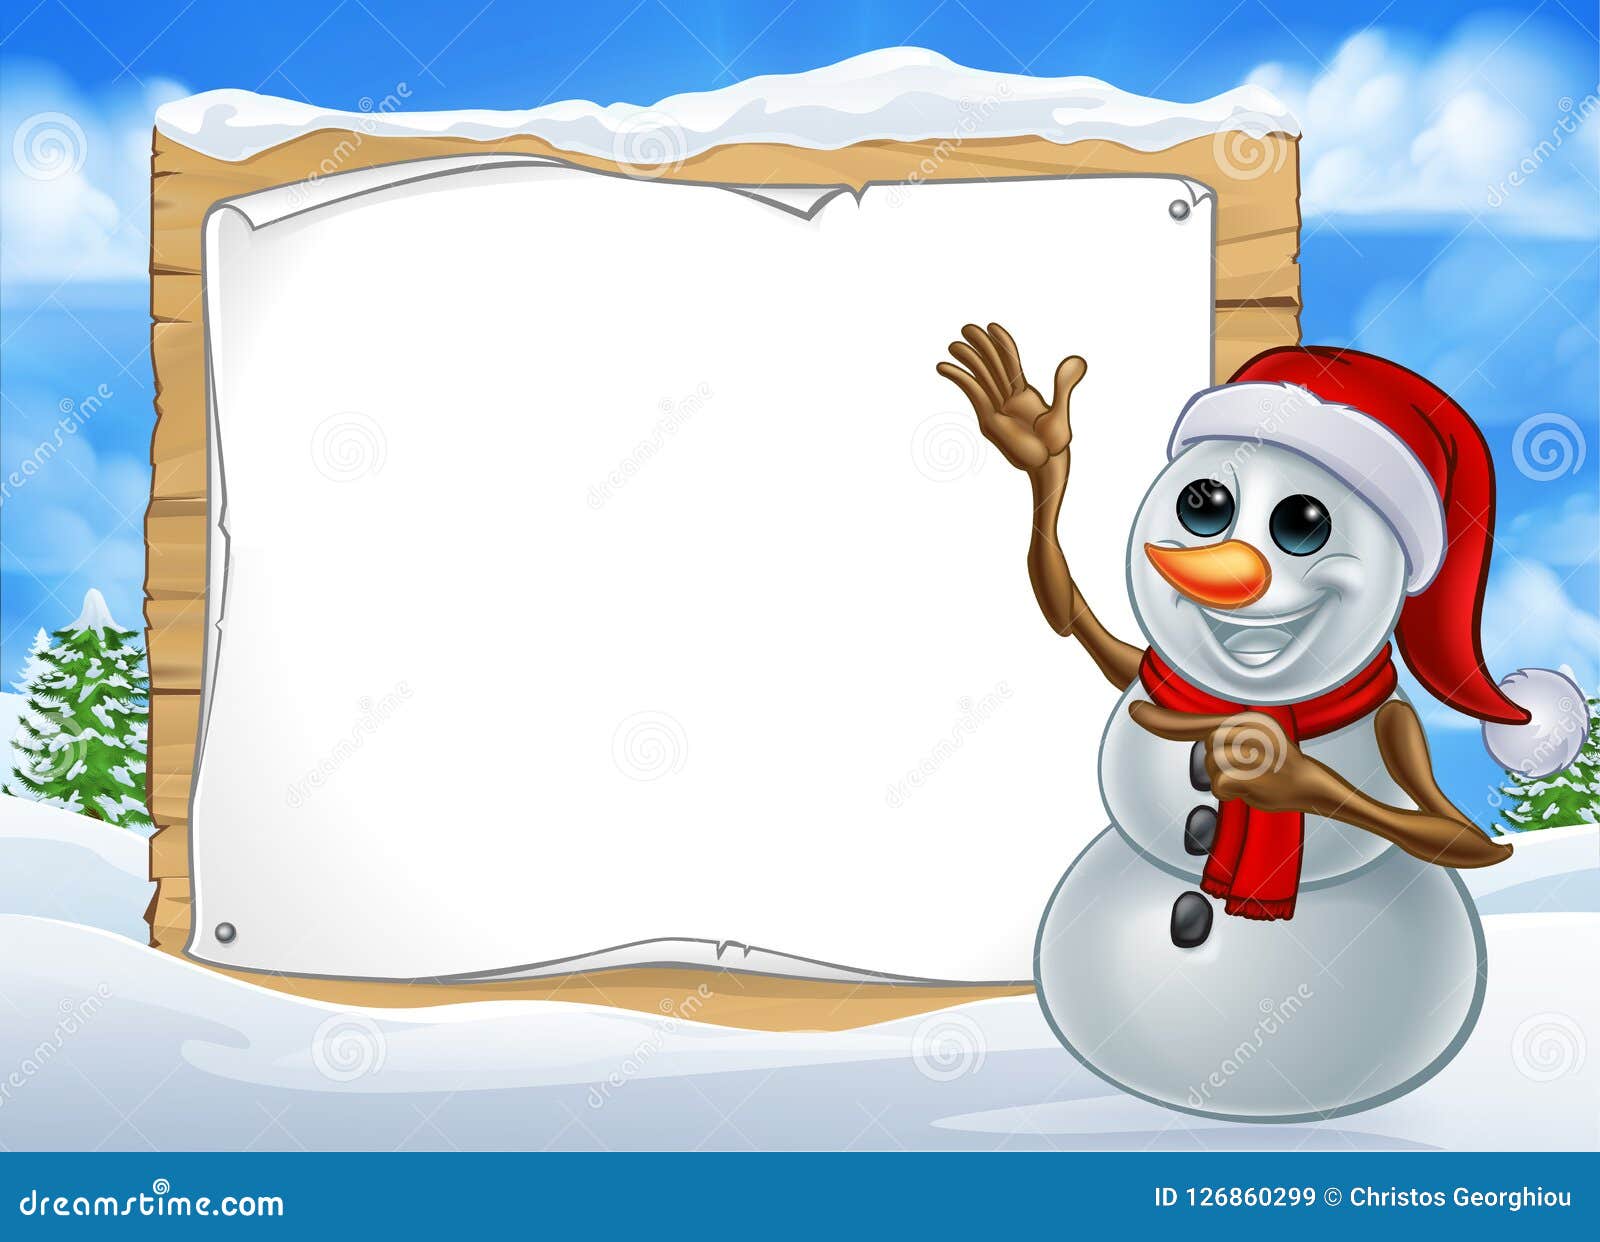 Disegni Animati Di Natale.Segno Del Personaggio Dei Cartoni Animati Di Natale Del Pupazzo Di Neve Illustrazione Vettoriale Illustrazione Di Telaio Indicare 126860299